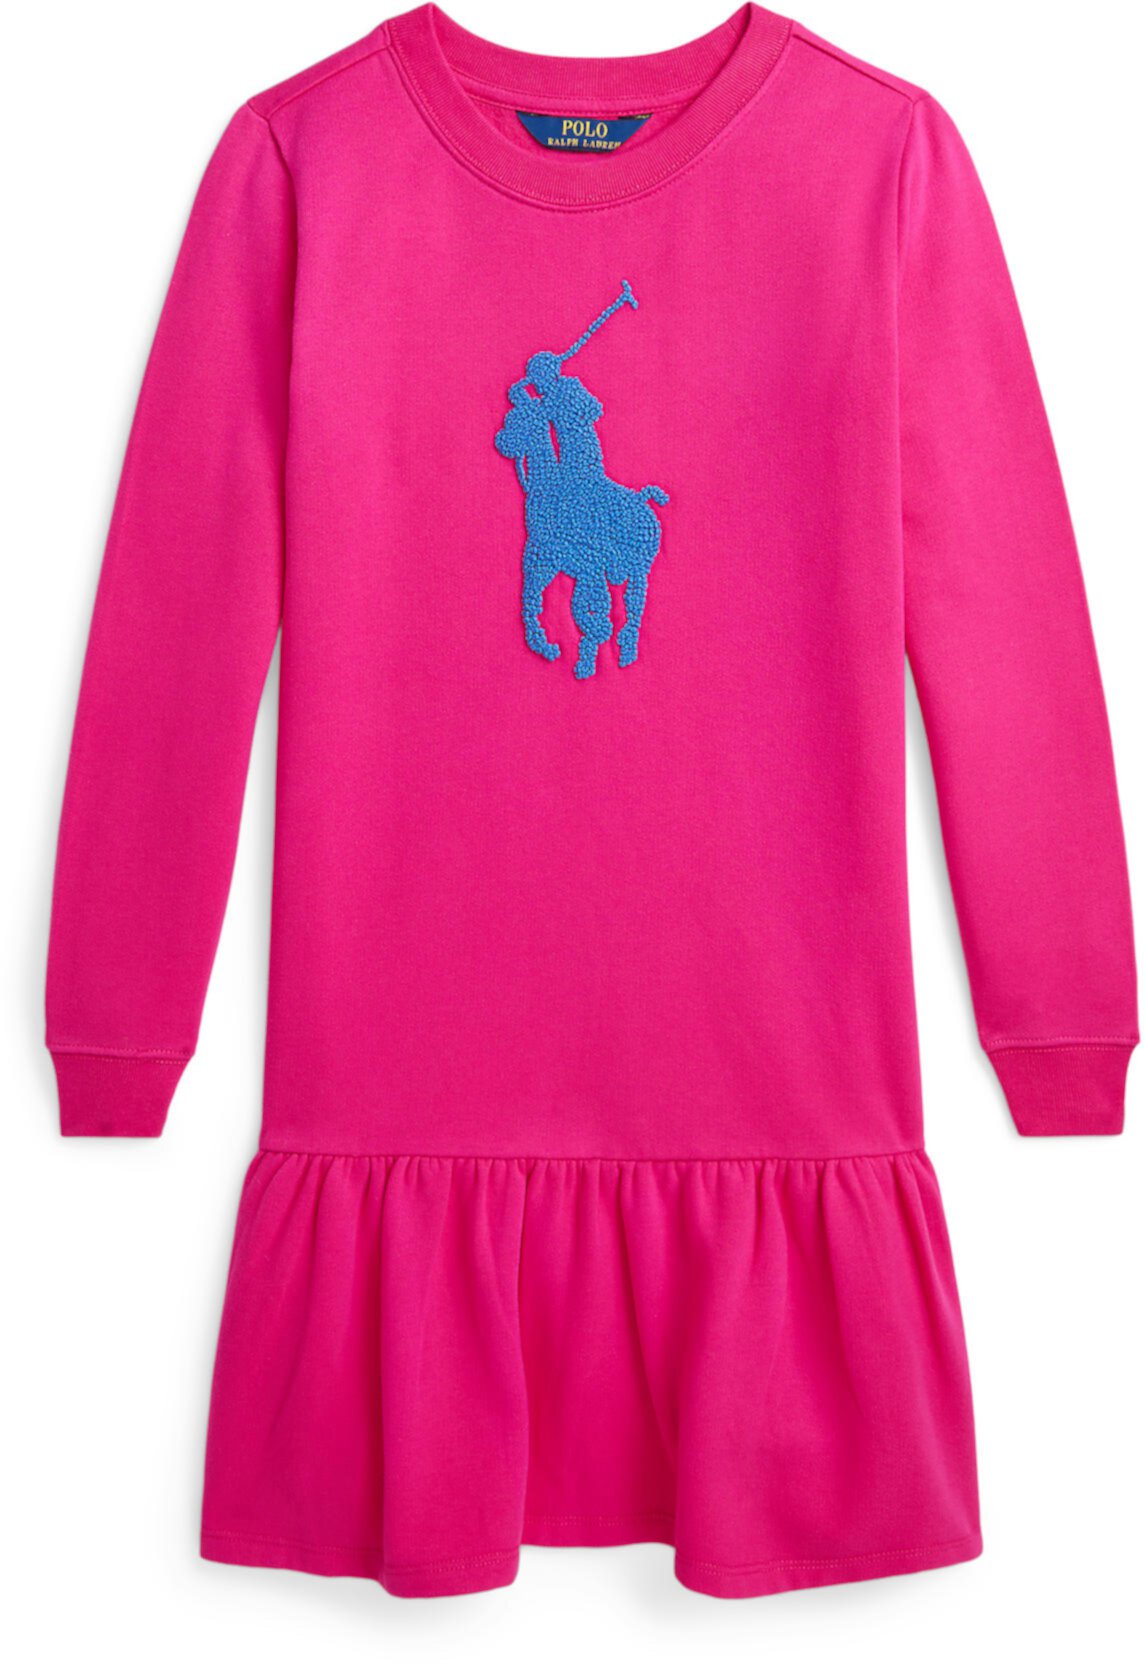 Флисовое платье с французским узлом Big Pony (для больших детей) Polo Ralph Lauren